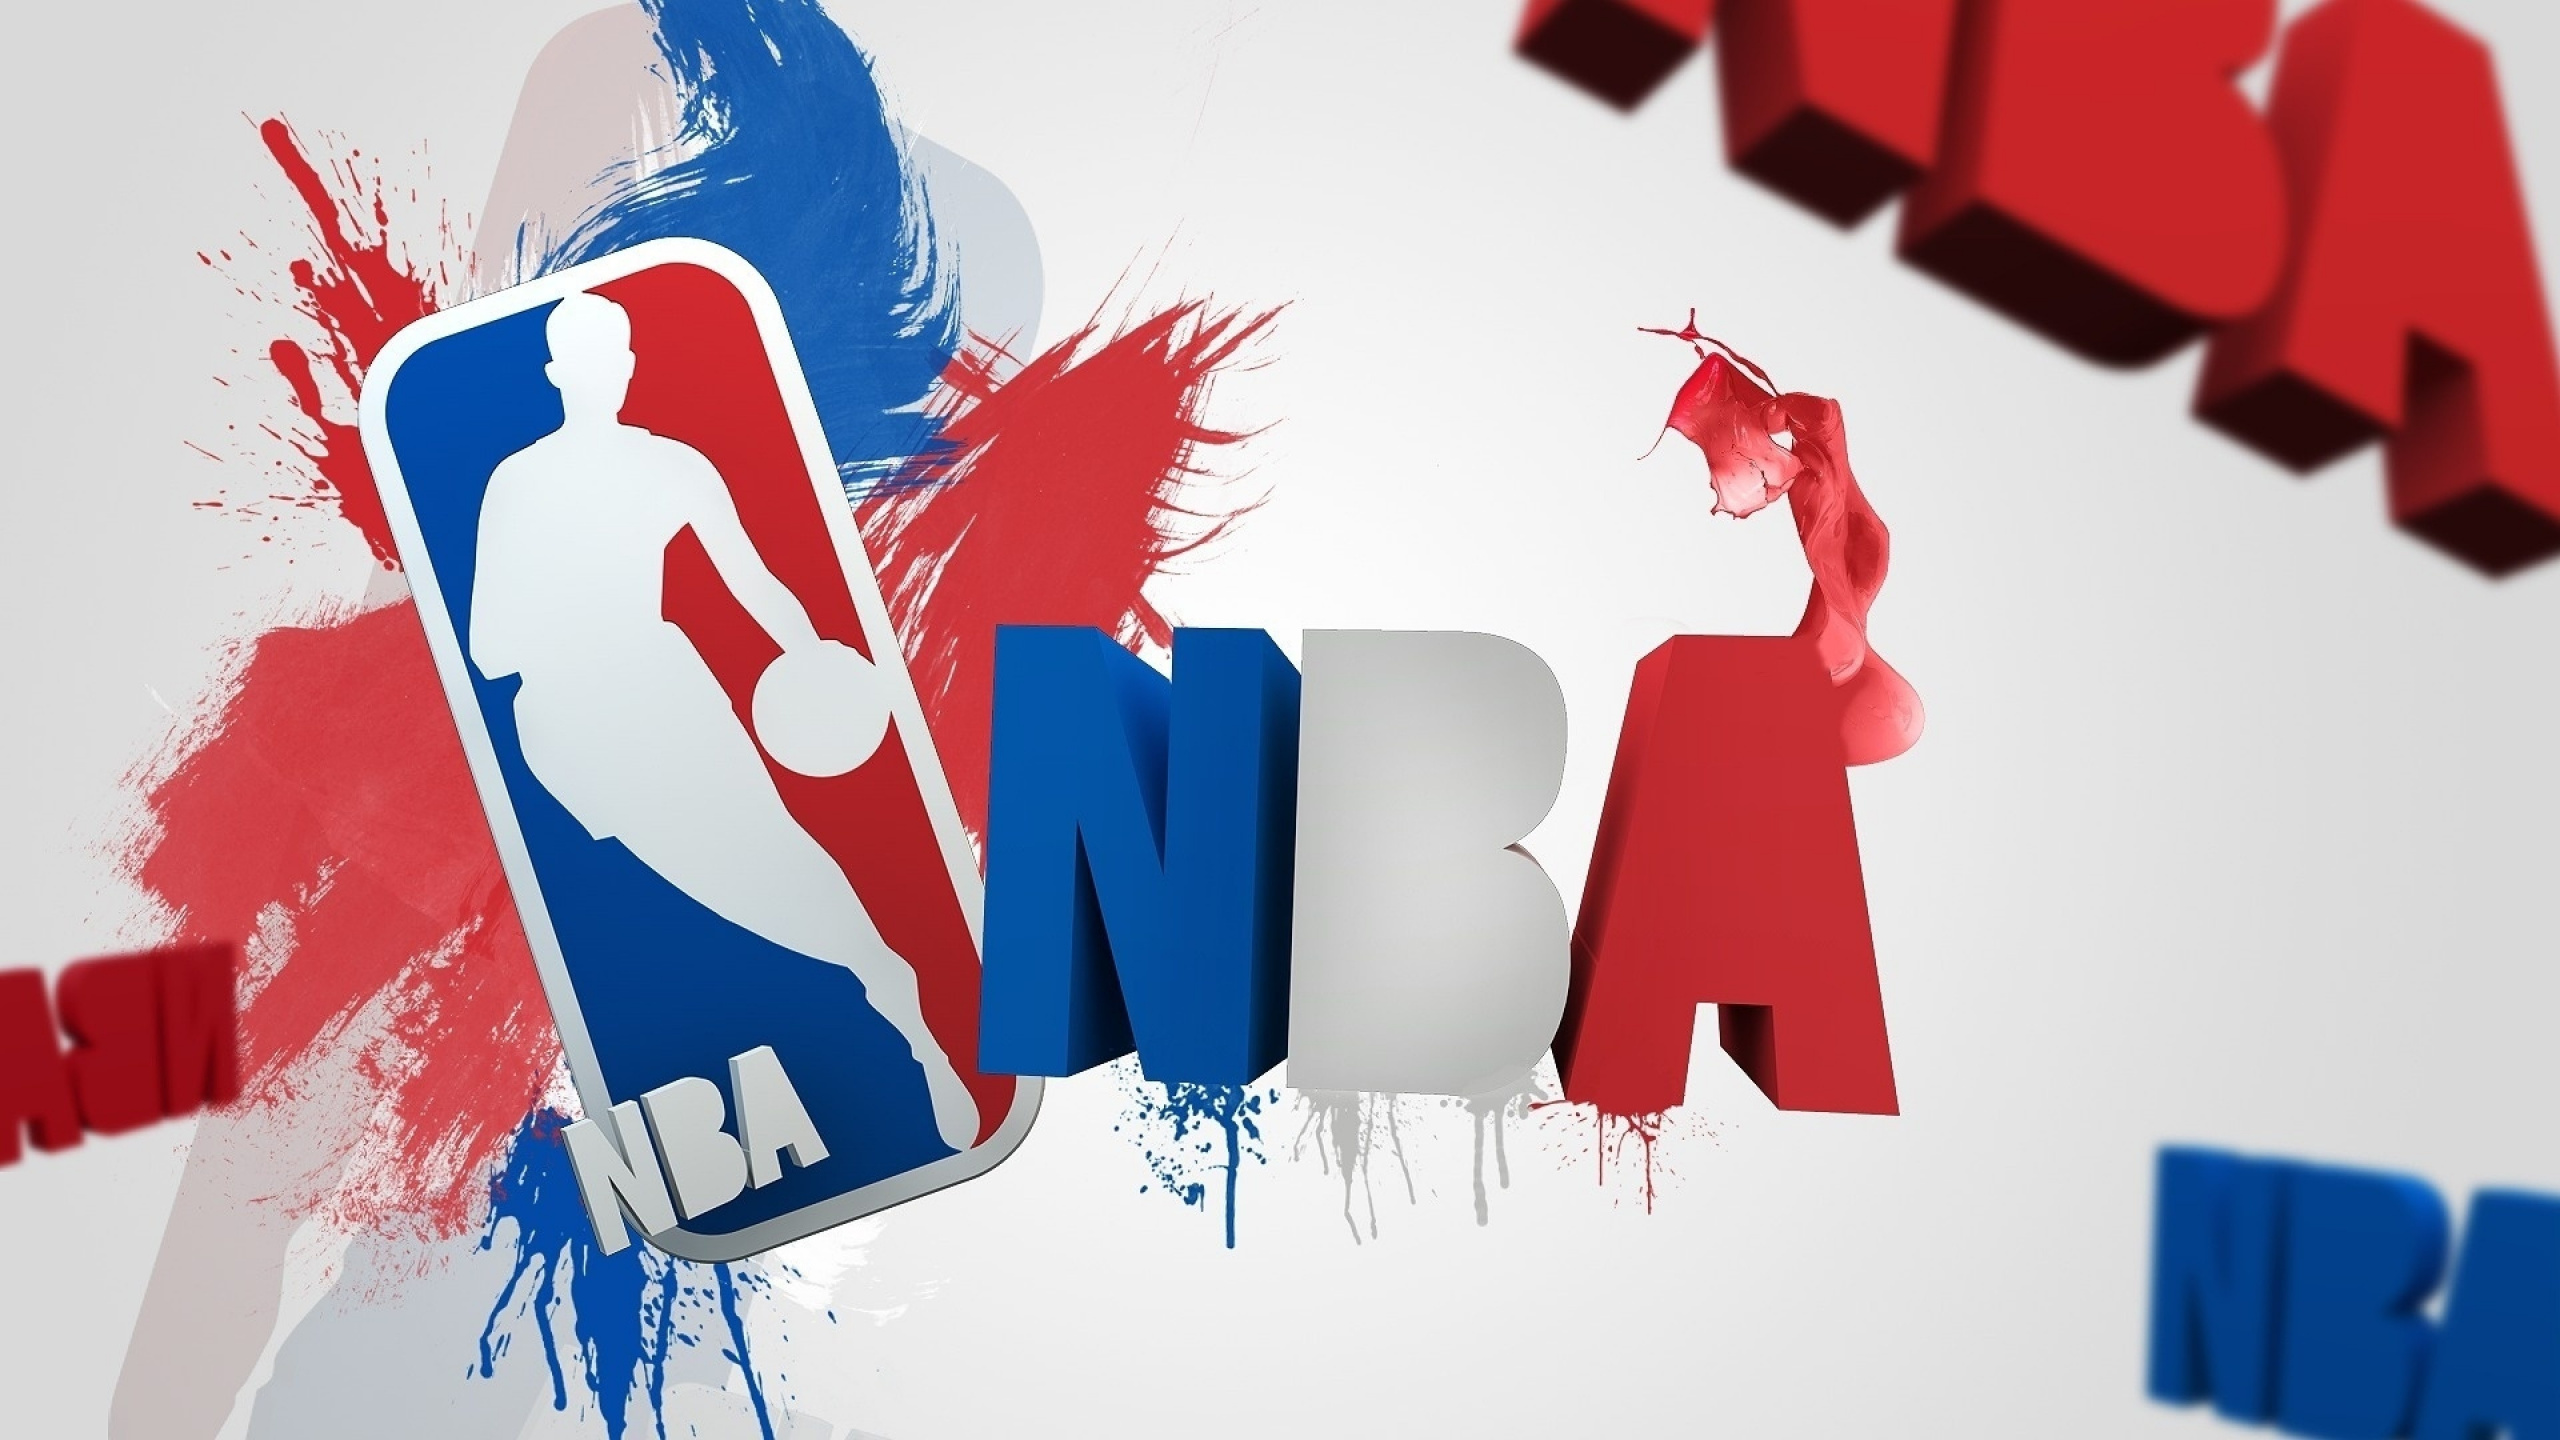 篮球, 图形设计, 艺术, 创造性的艺术, Nba的 壁纸 2560x1440 允许